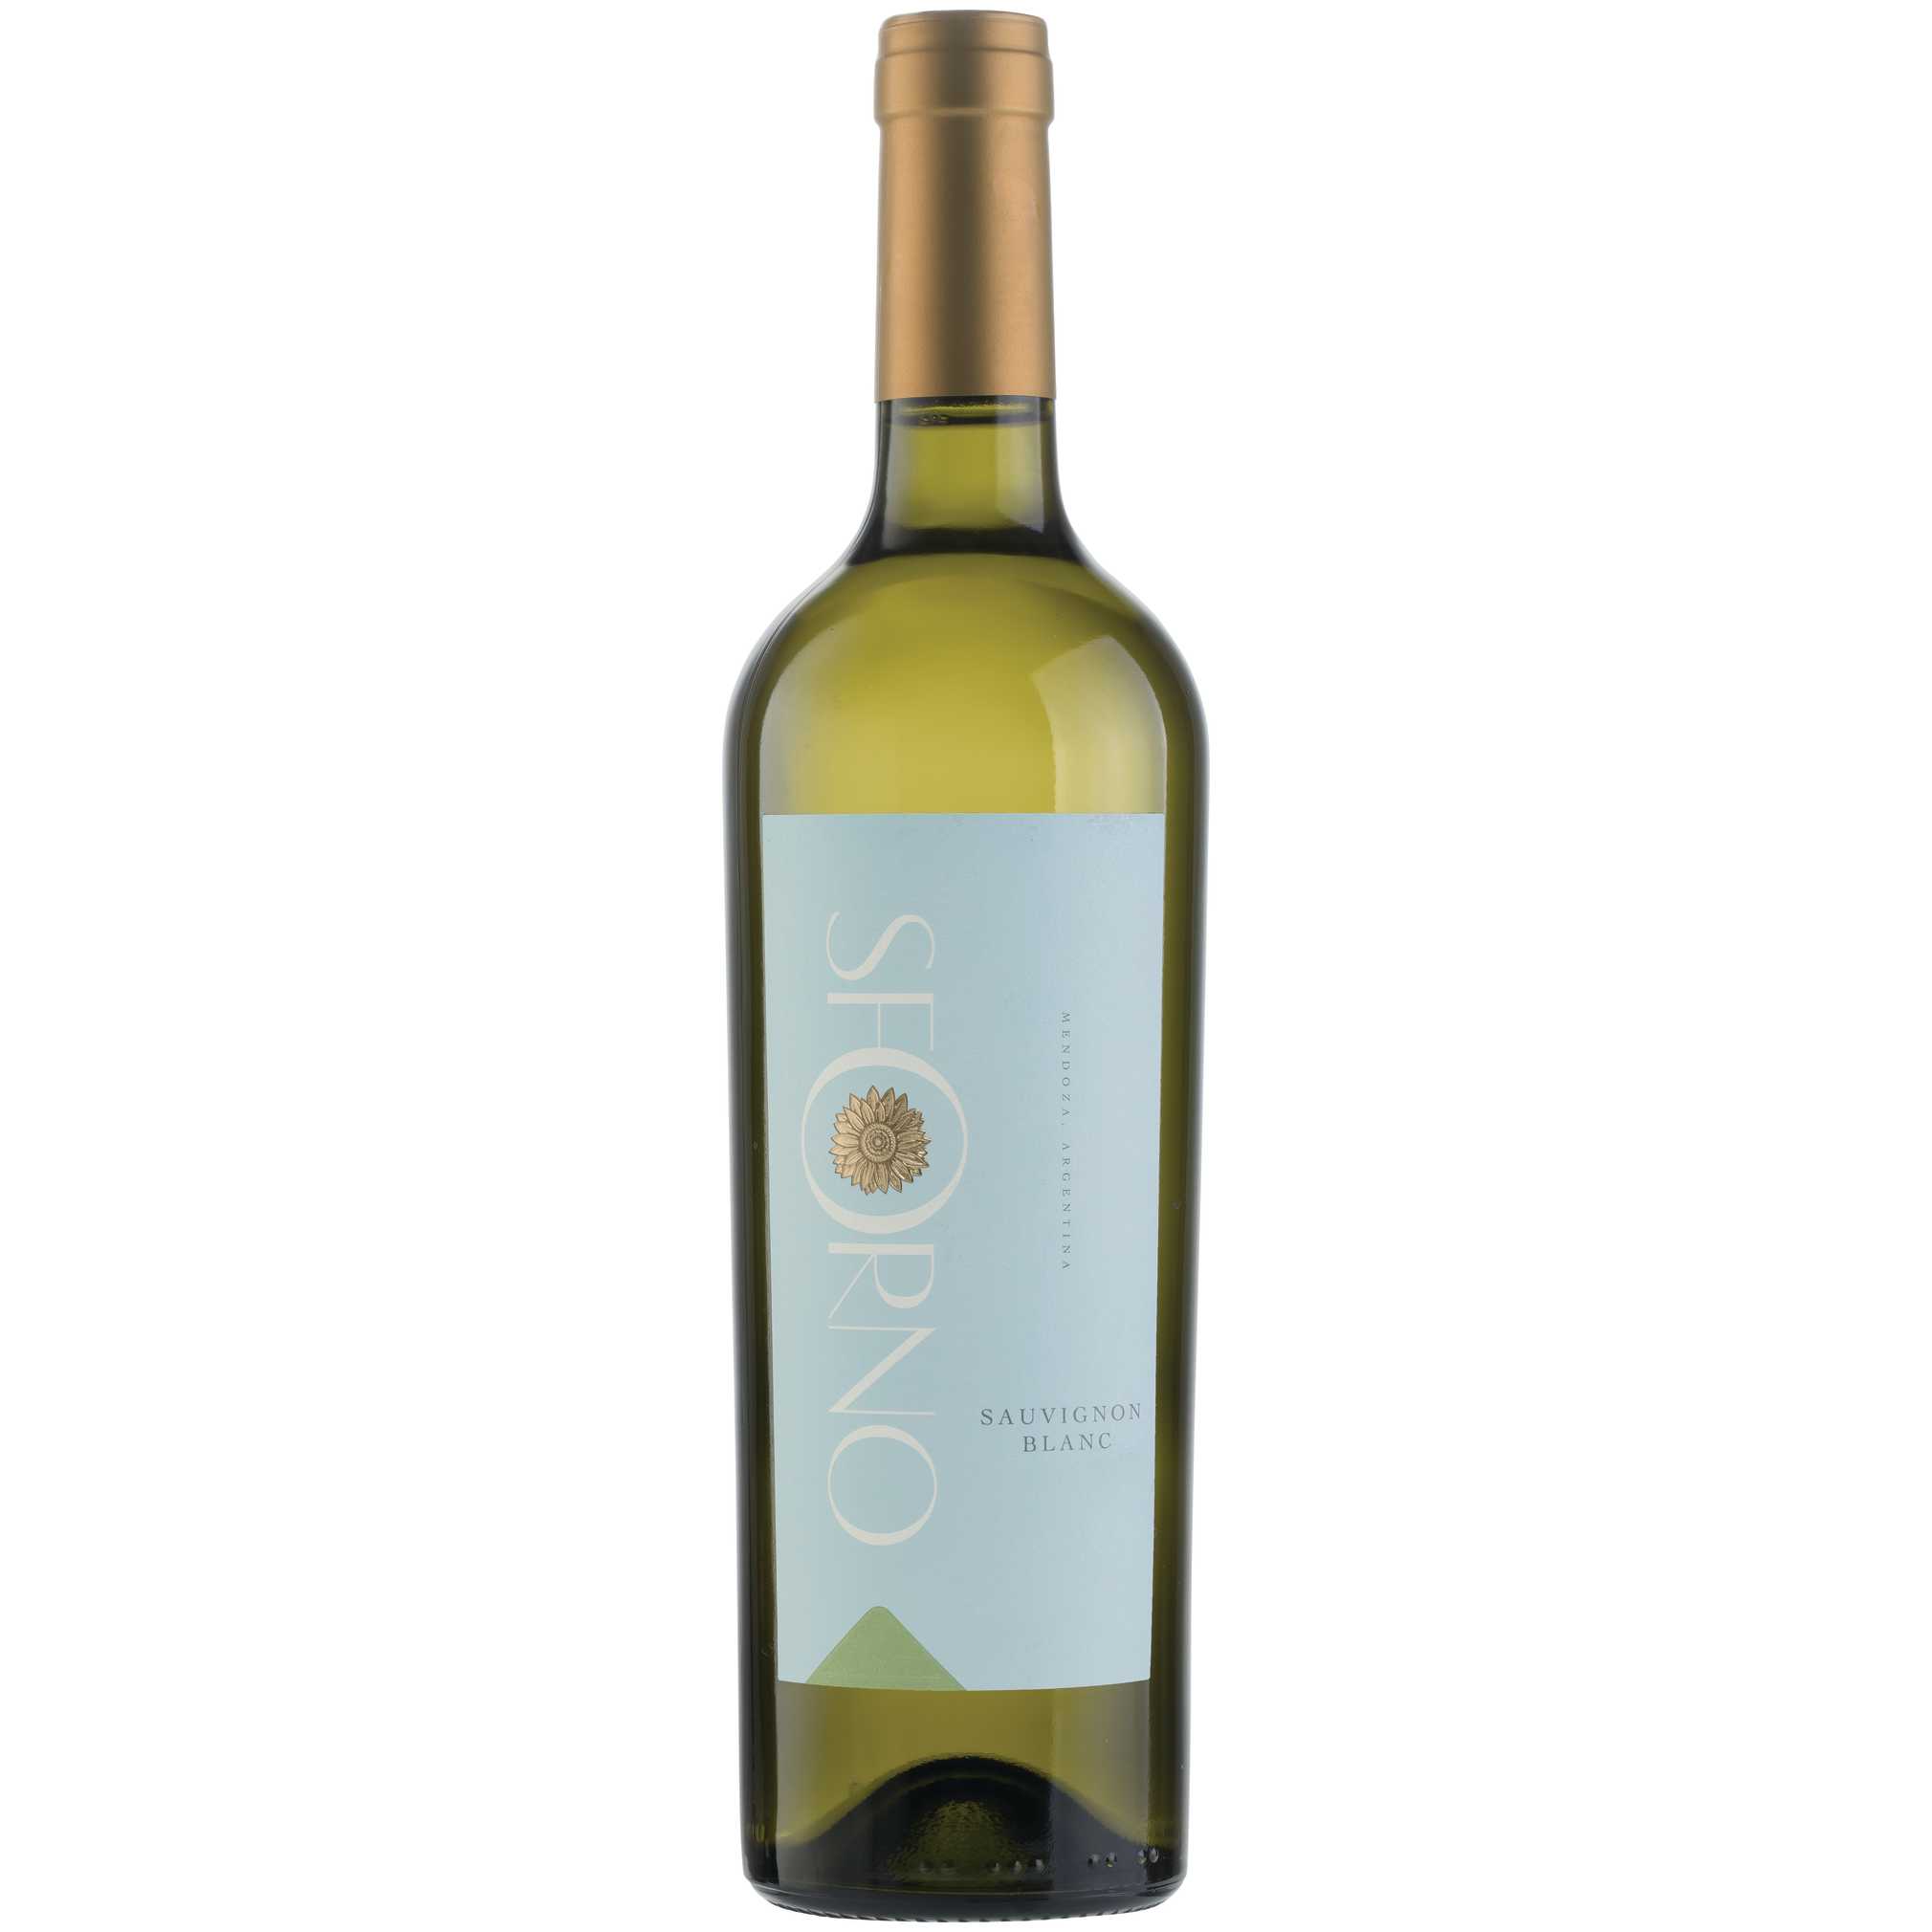 Sforno Sauvignon Blanc - A Kosher Wine From Argentina